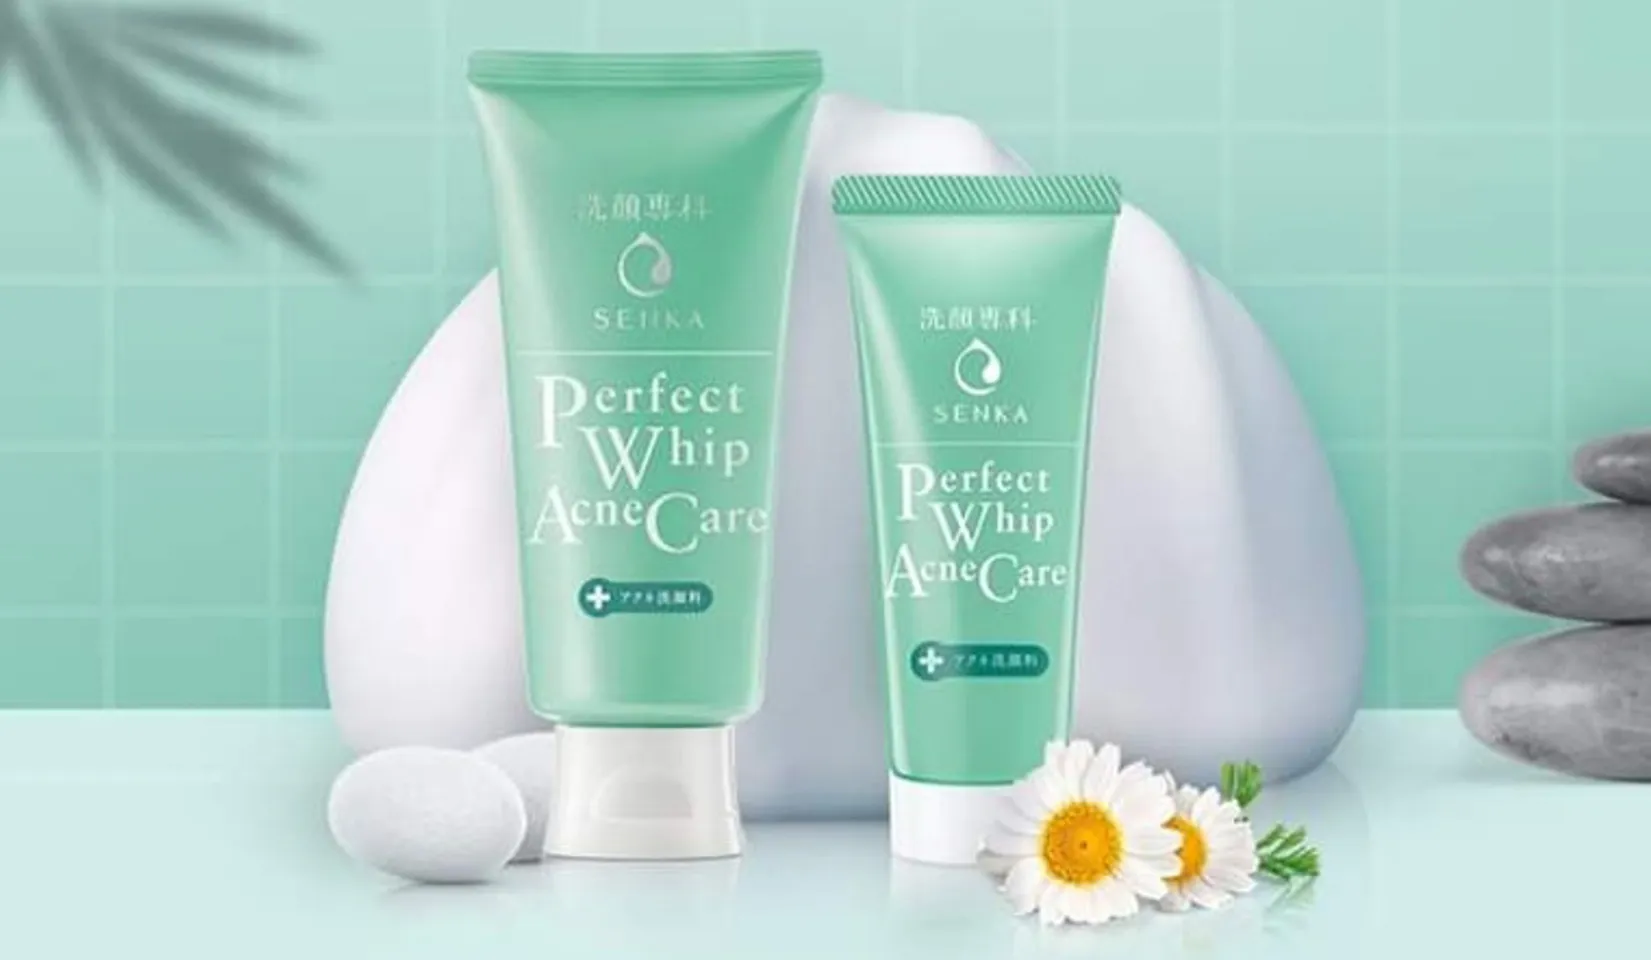 Sữa rửa mặt Senka perfect whip acne care dành cho da mụn